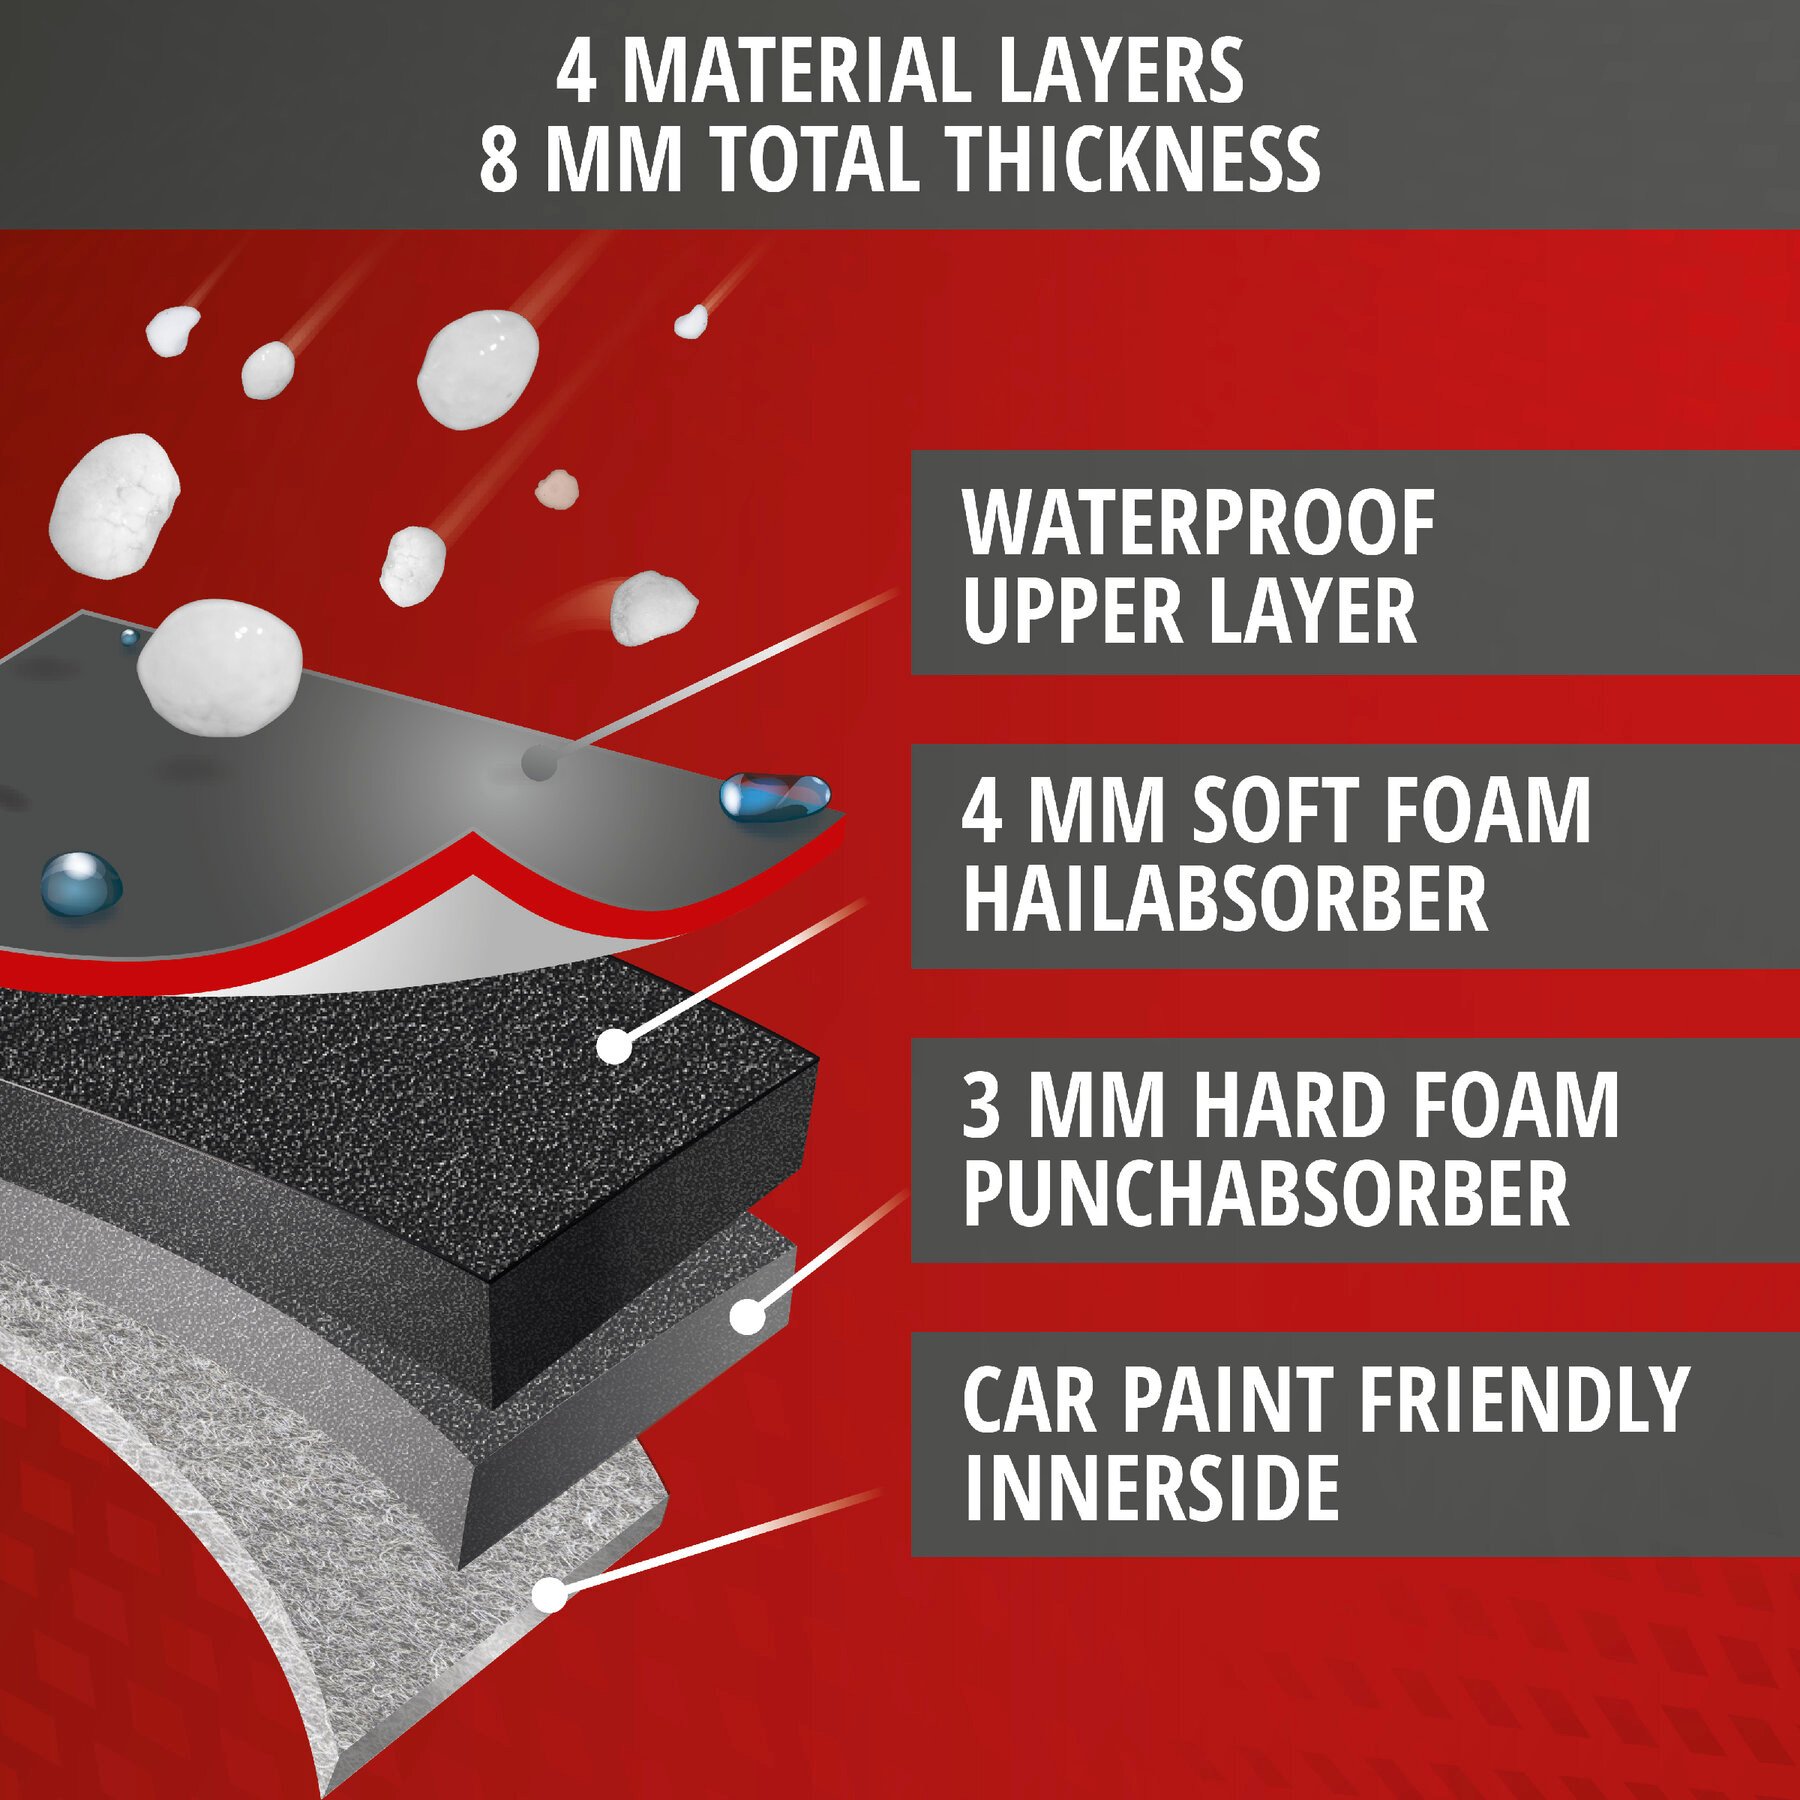 Car hail protection tarpaulin Premium Hybrid SUV size M